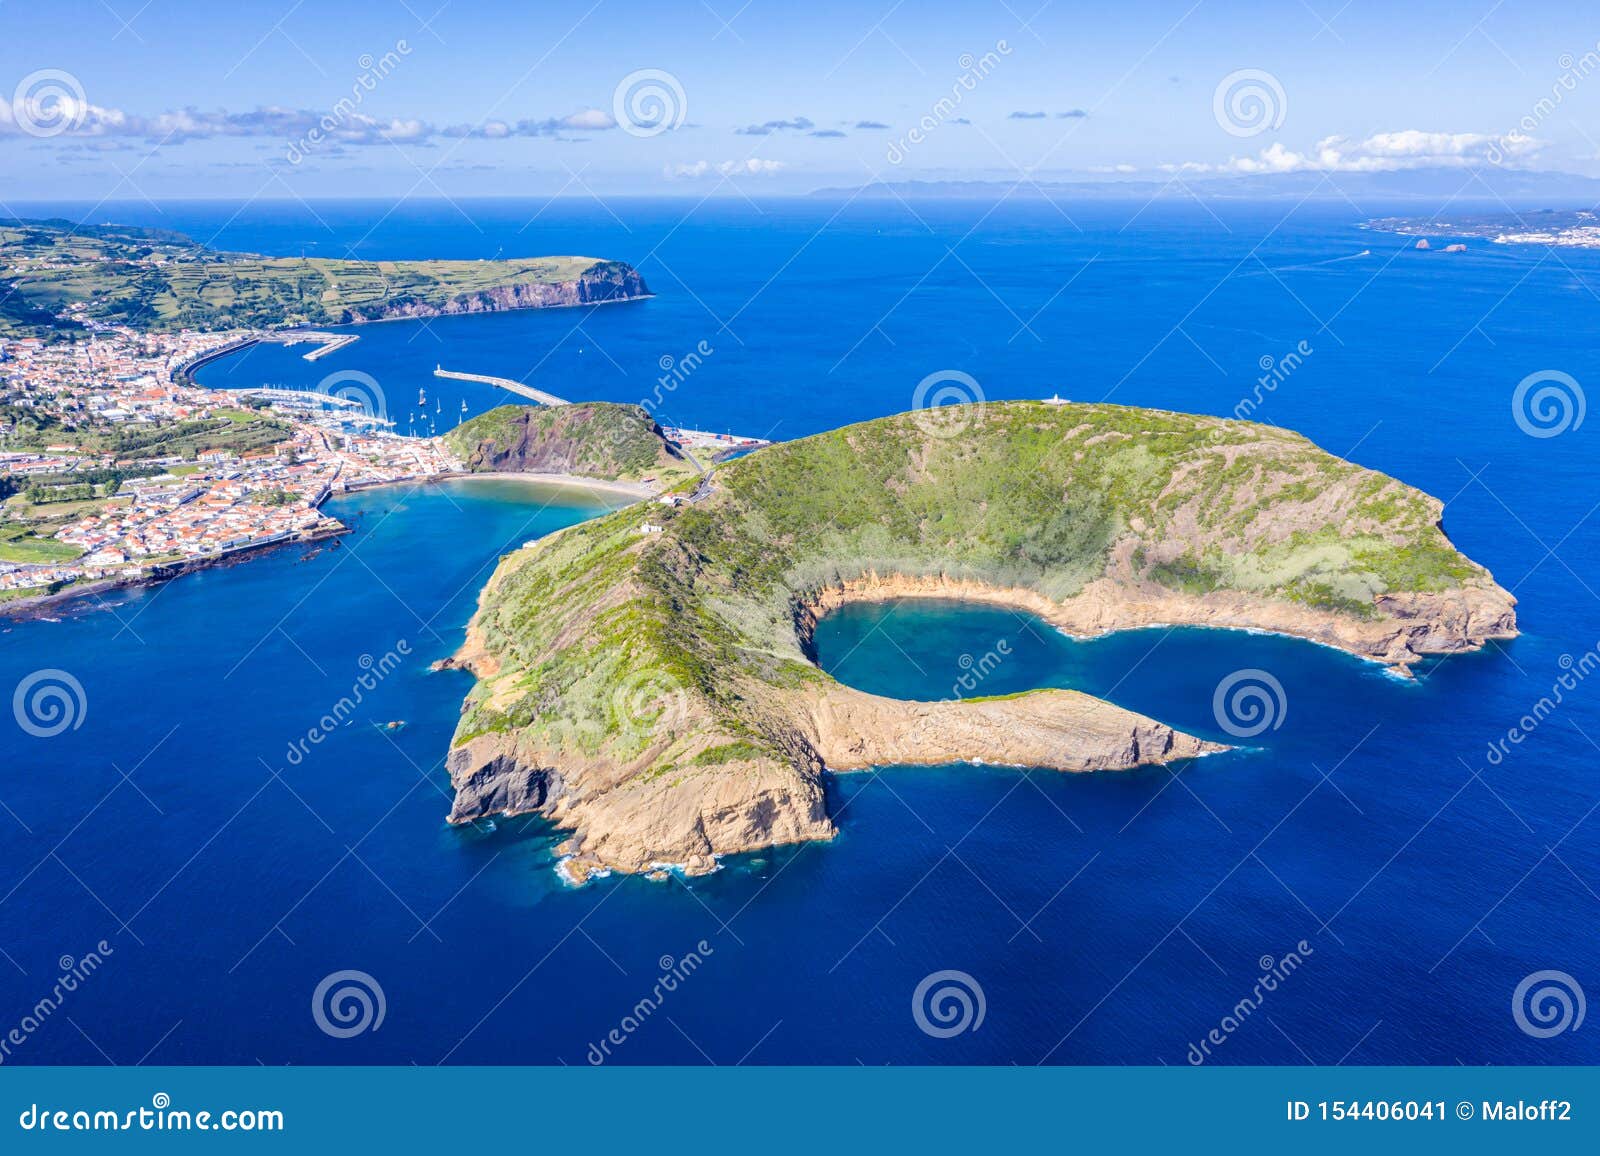 nature park, destructed extinct volcano craters of caldeirinhas, mountain guia, baia do porto pim and port, faial island, portugal